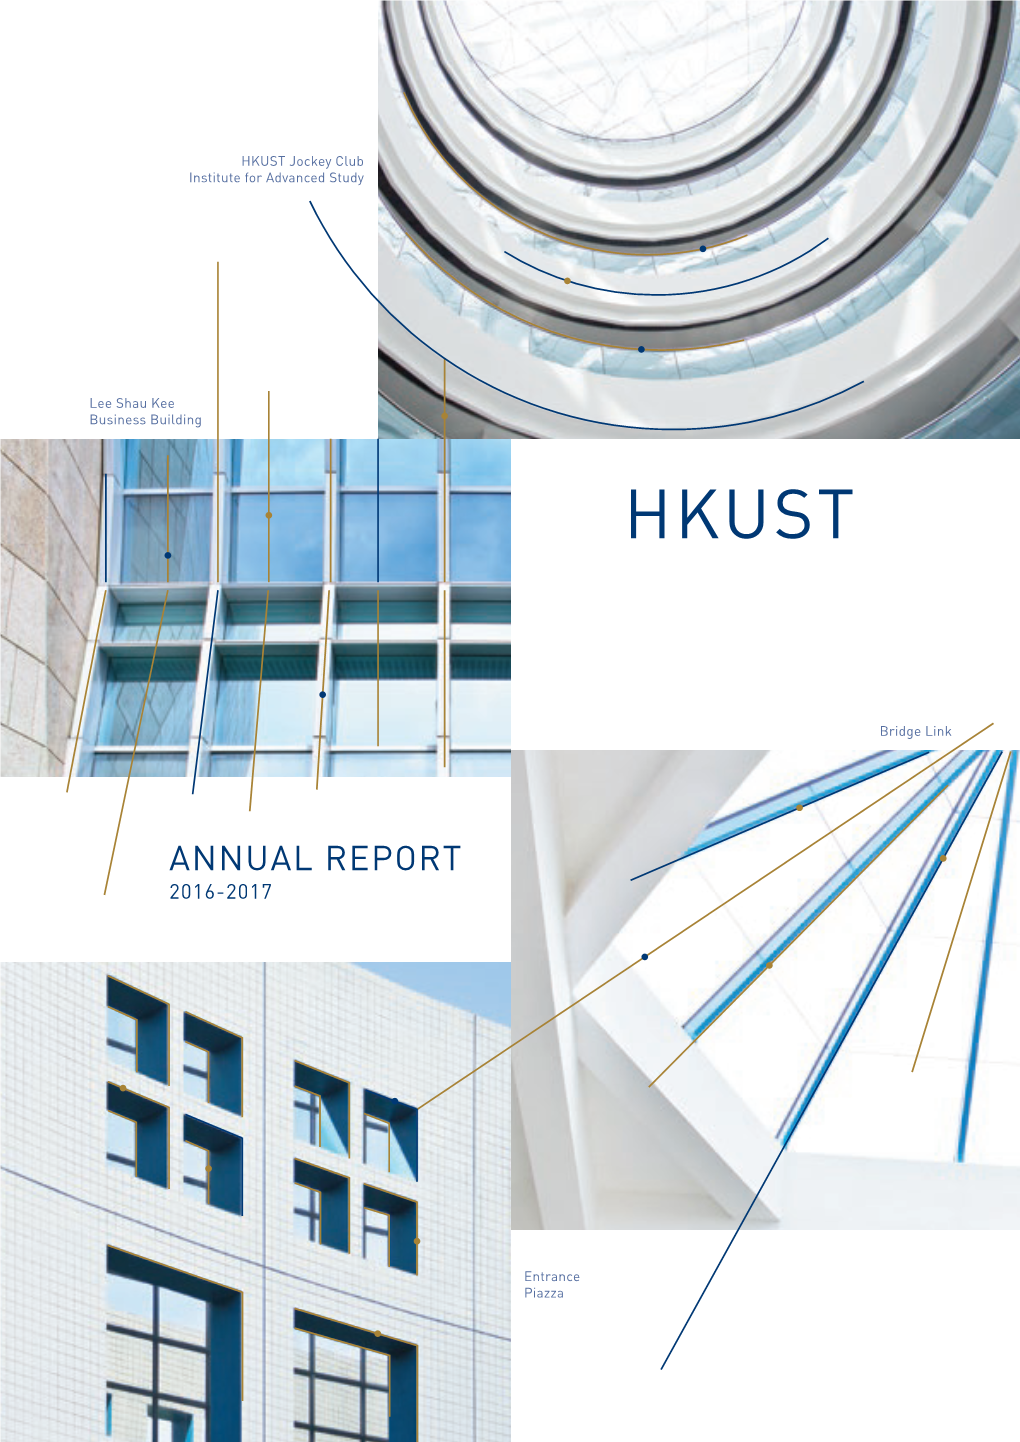 HKUST Annual Report 2016-2017